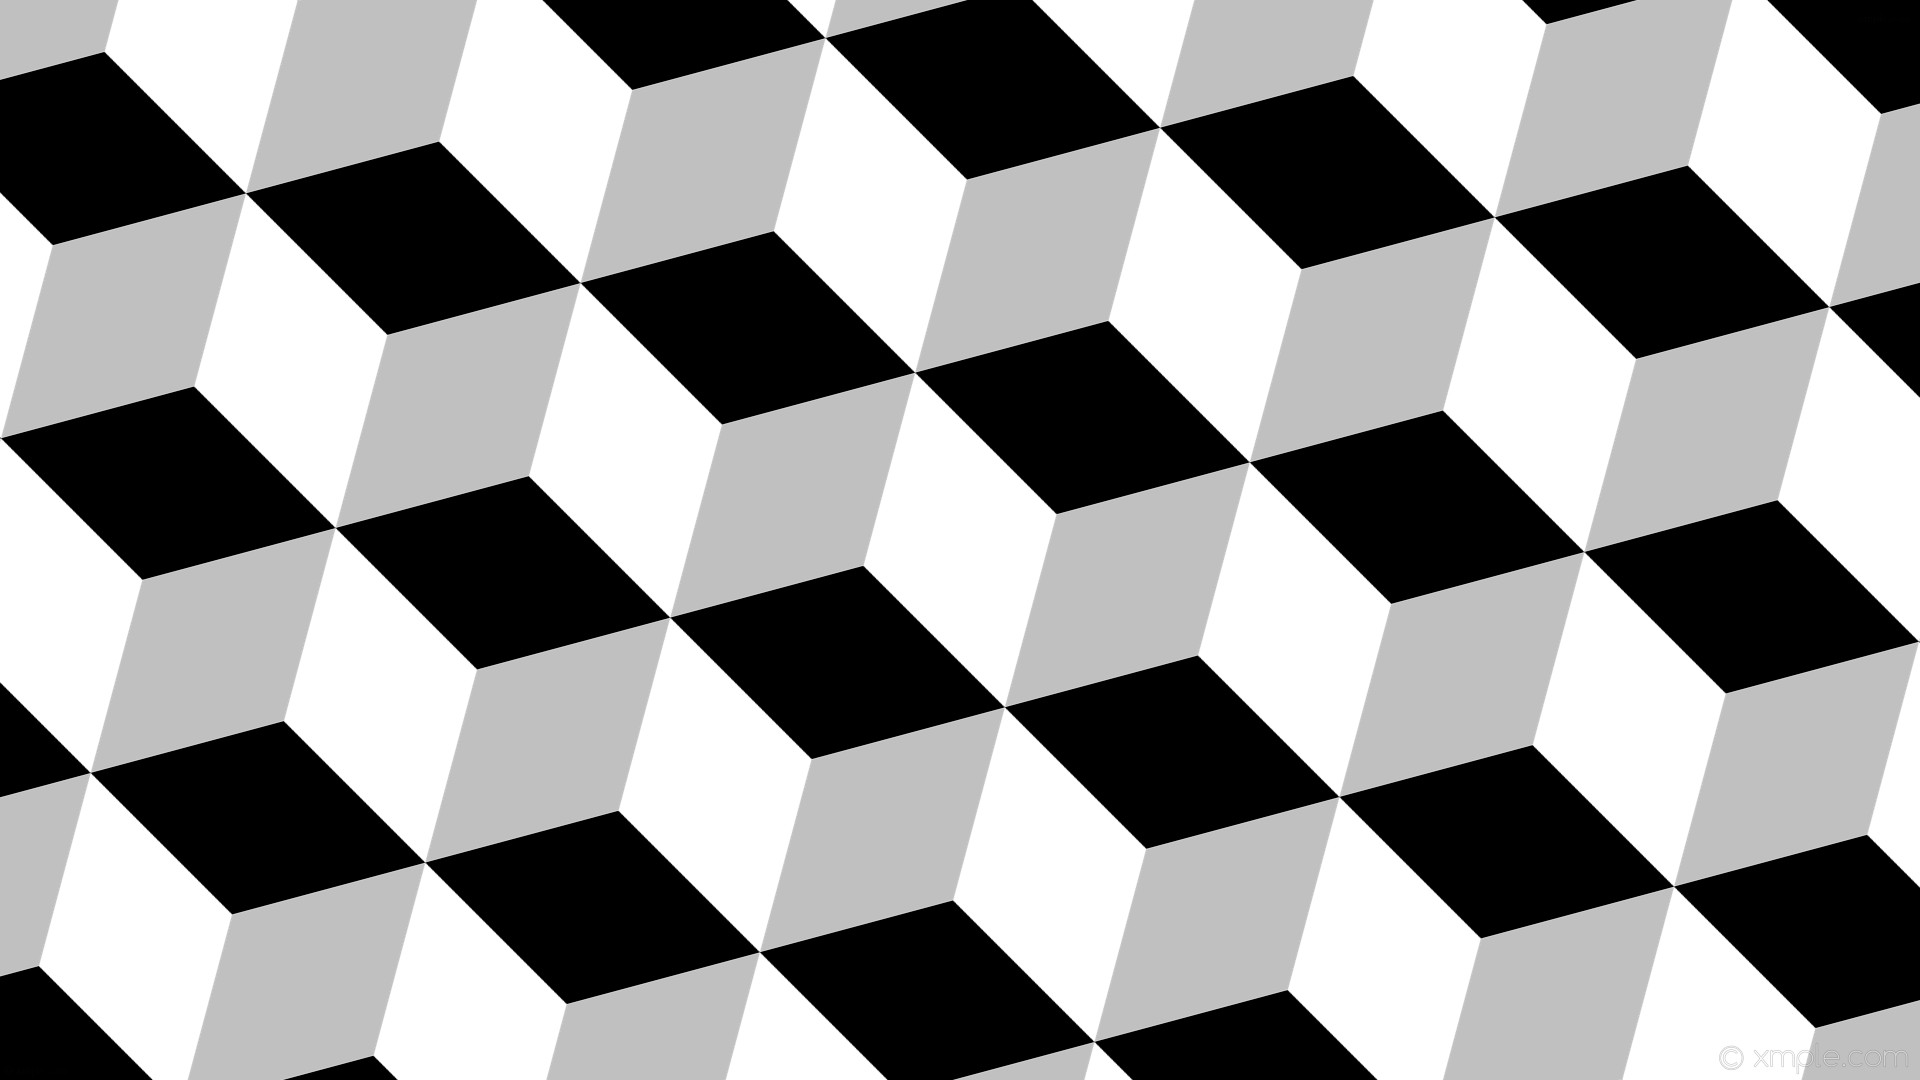 1920x1080 wallpaper black 3d cubes grey white silver #ffffff #c0c0c0 #000000 285Â°  200px